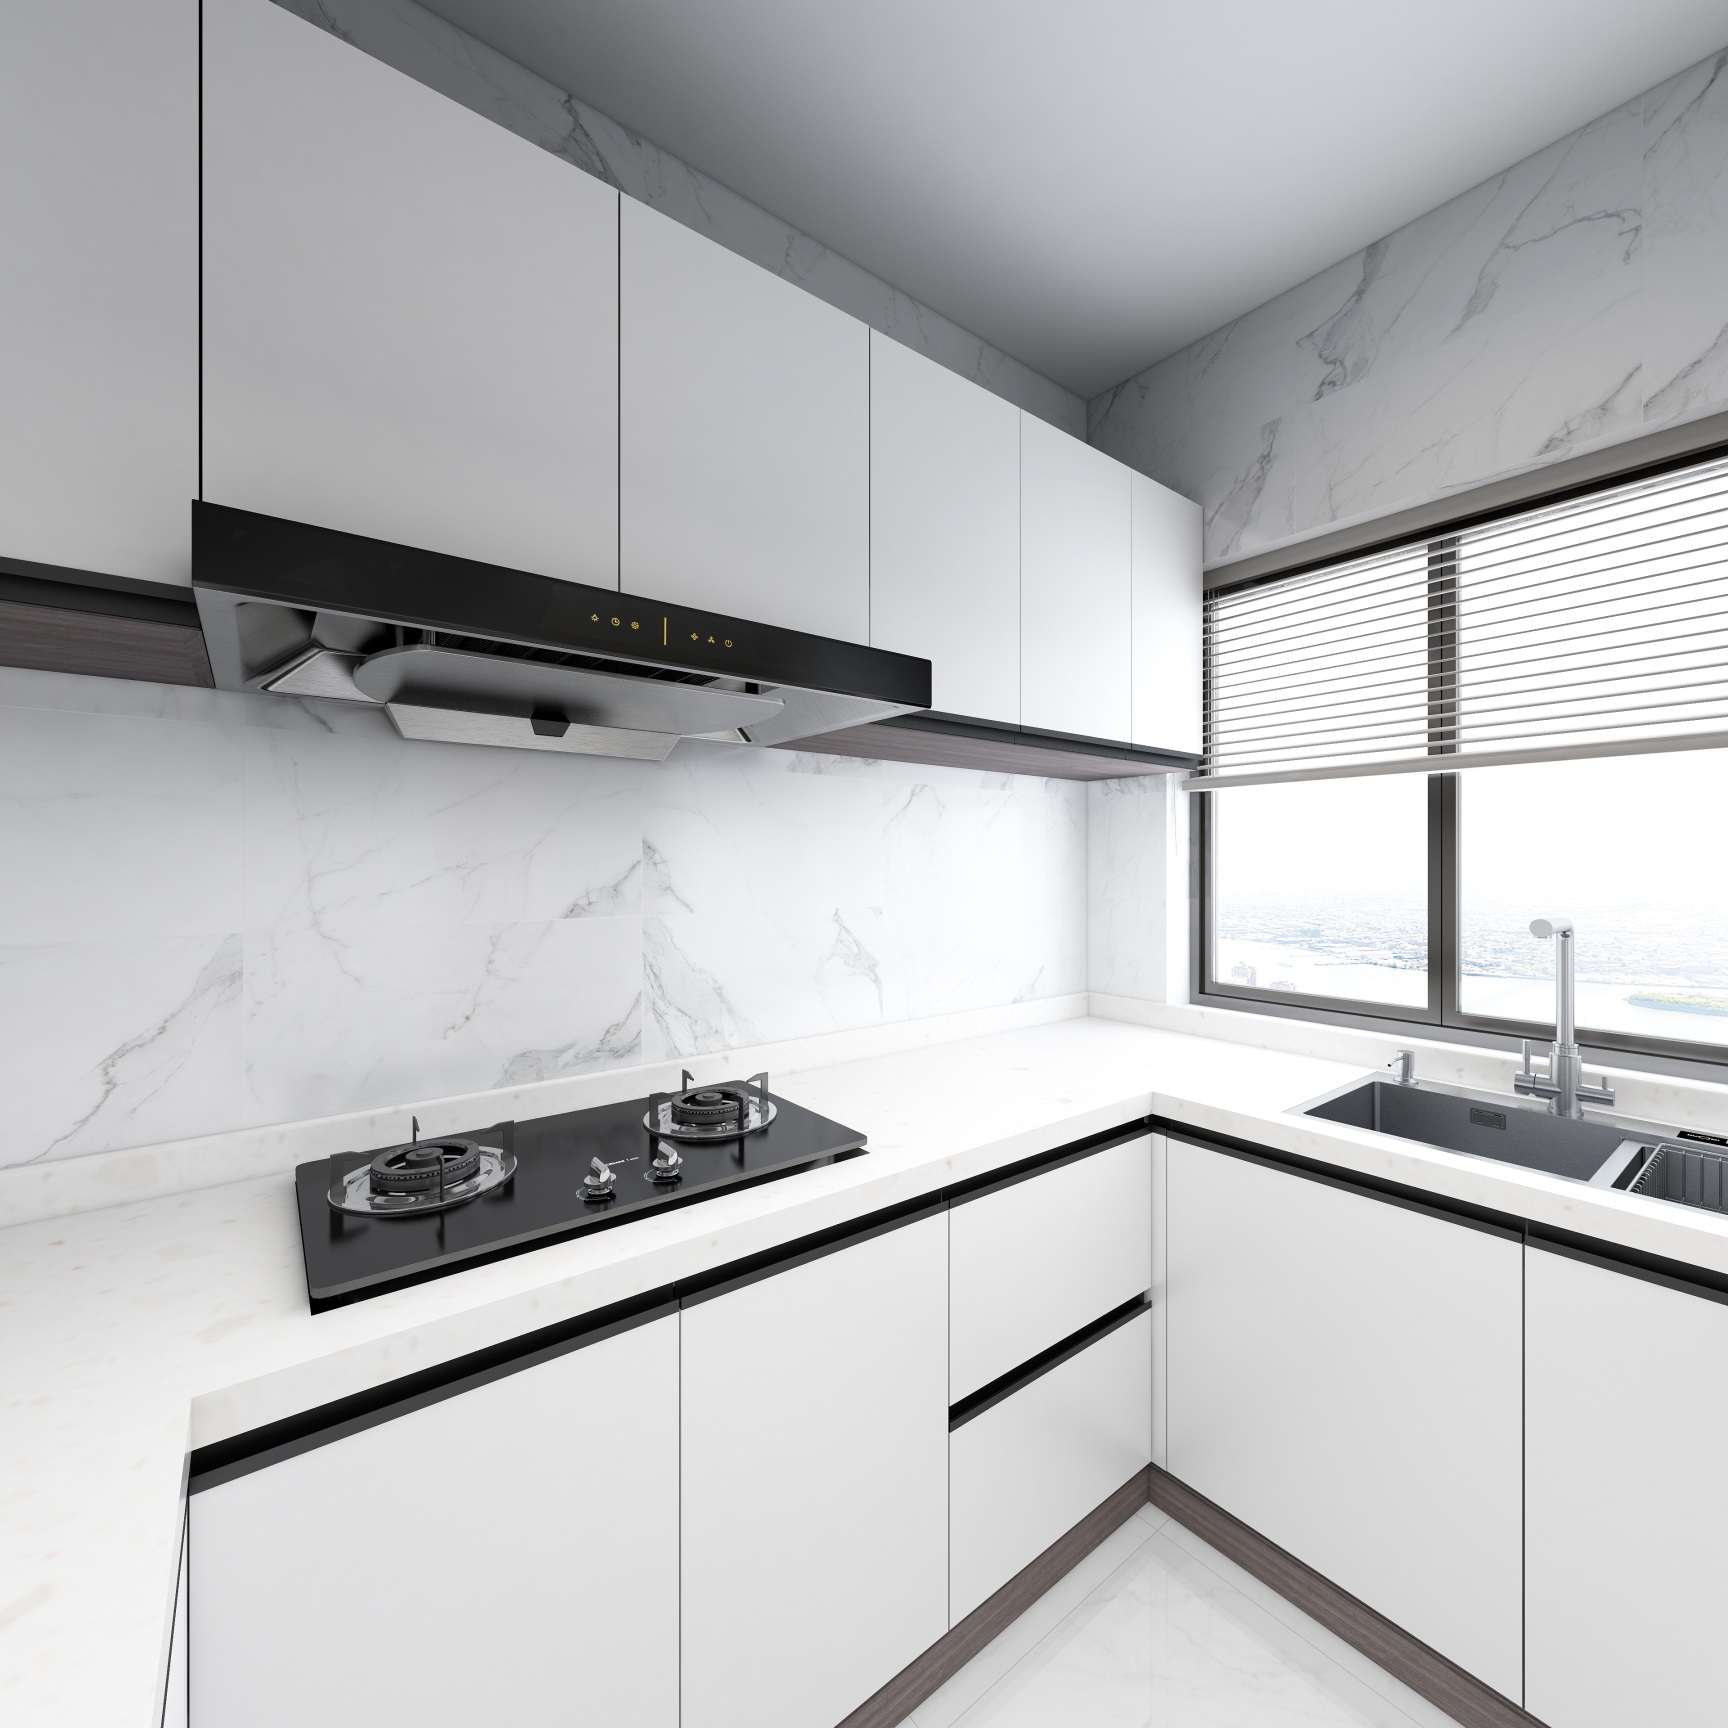 厨房以白色为主基调，无吊顶设计使空间更为宽敞明亮，视觉氛围佳。